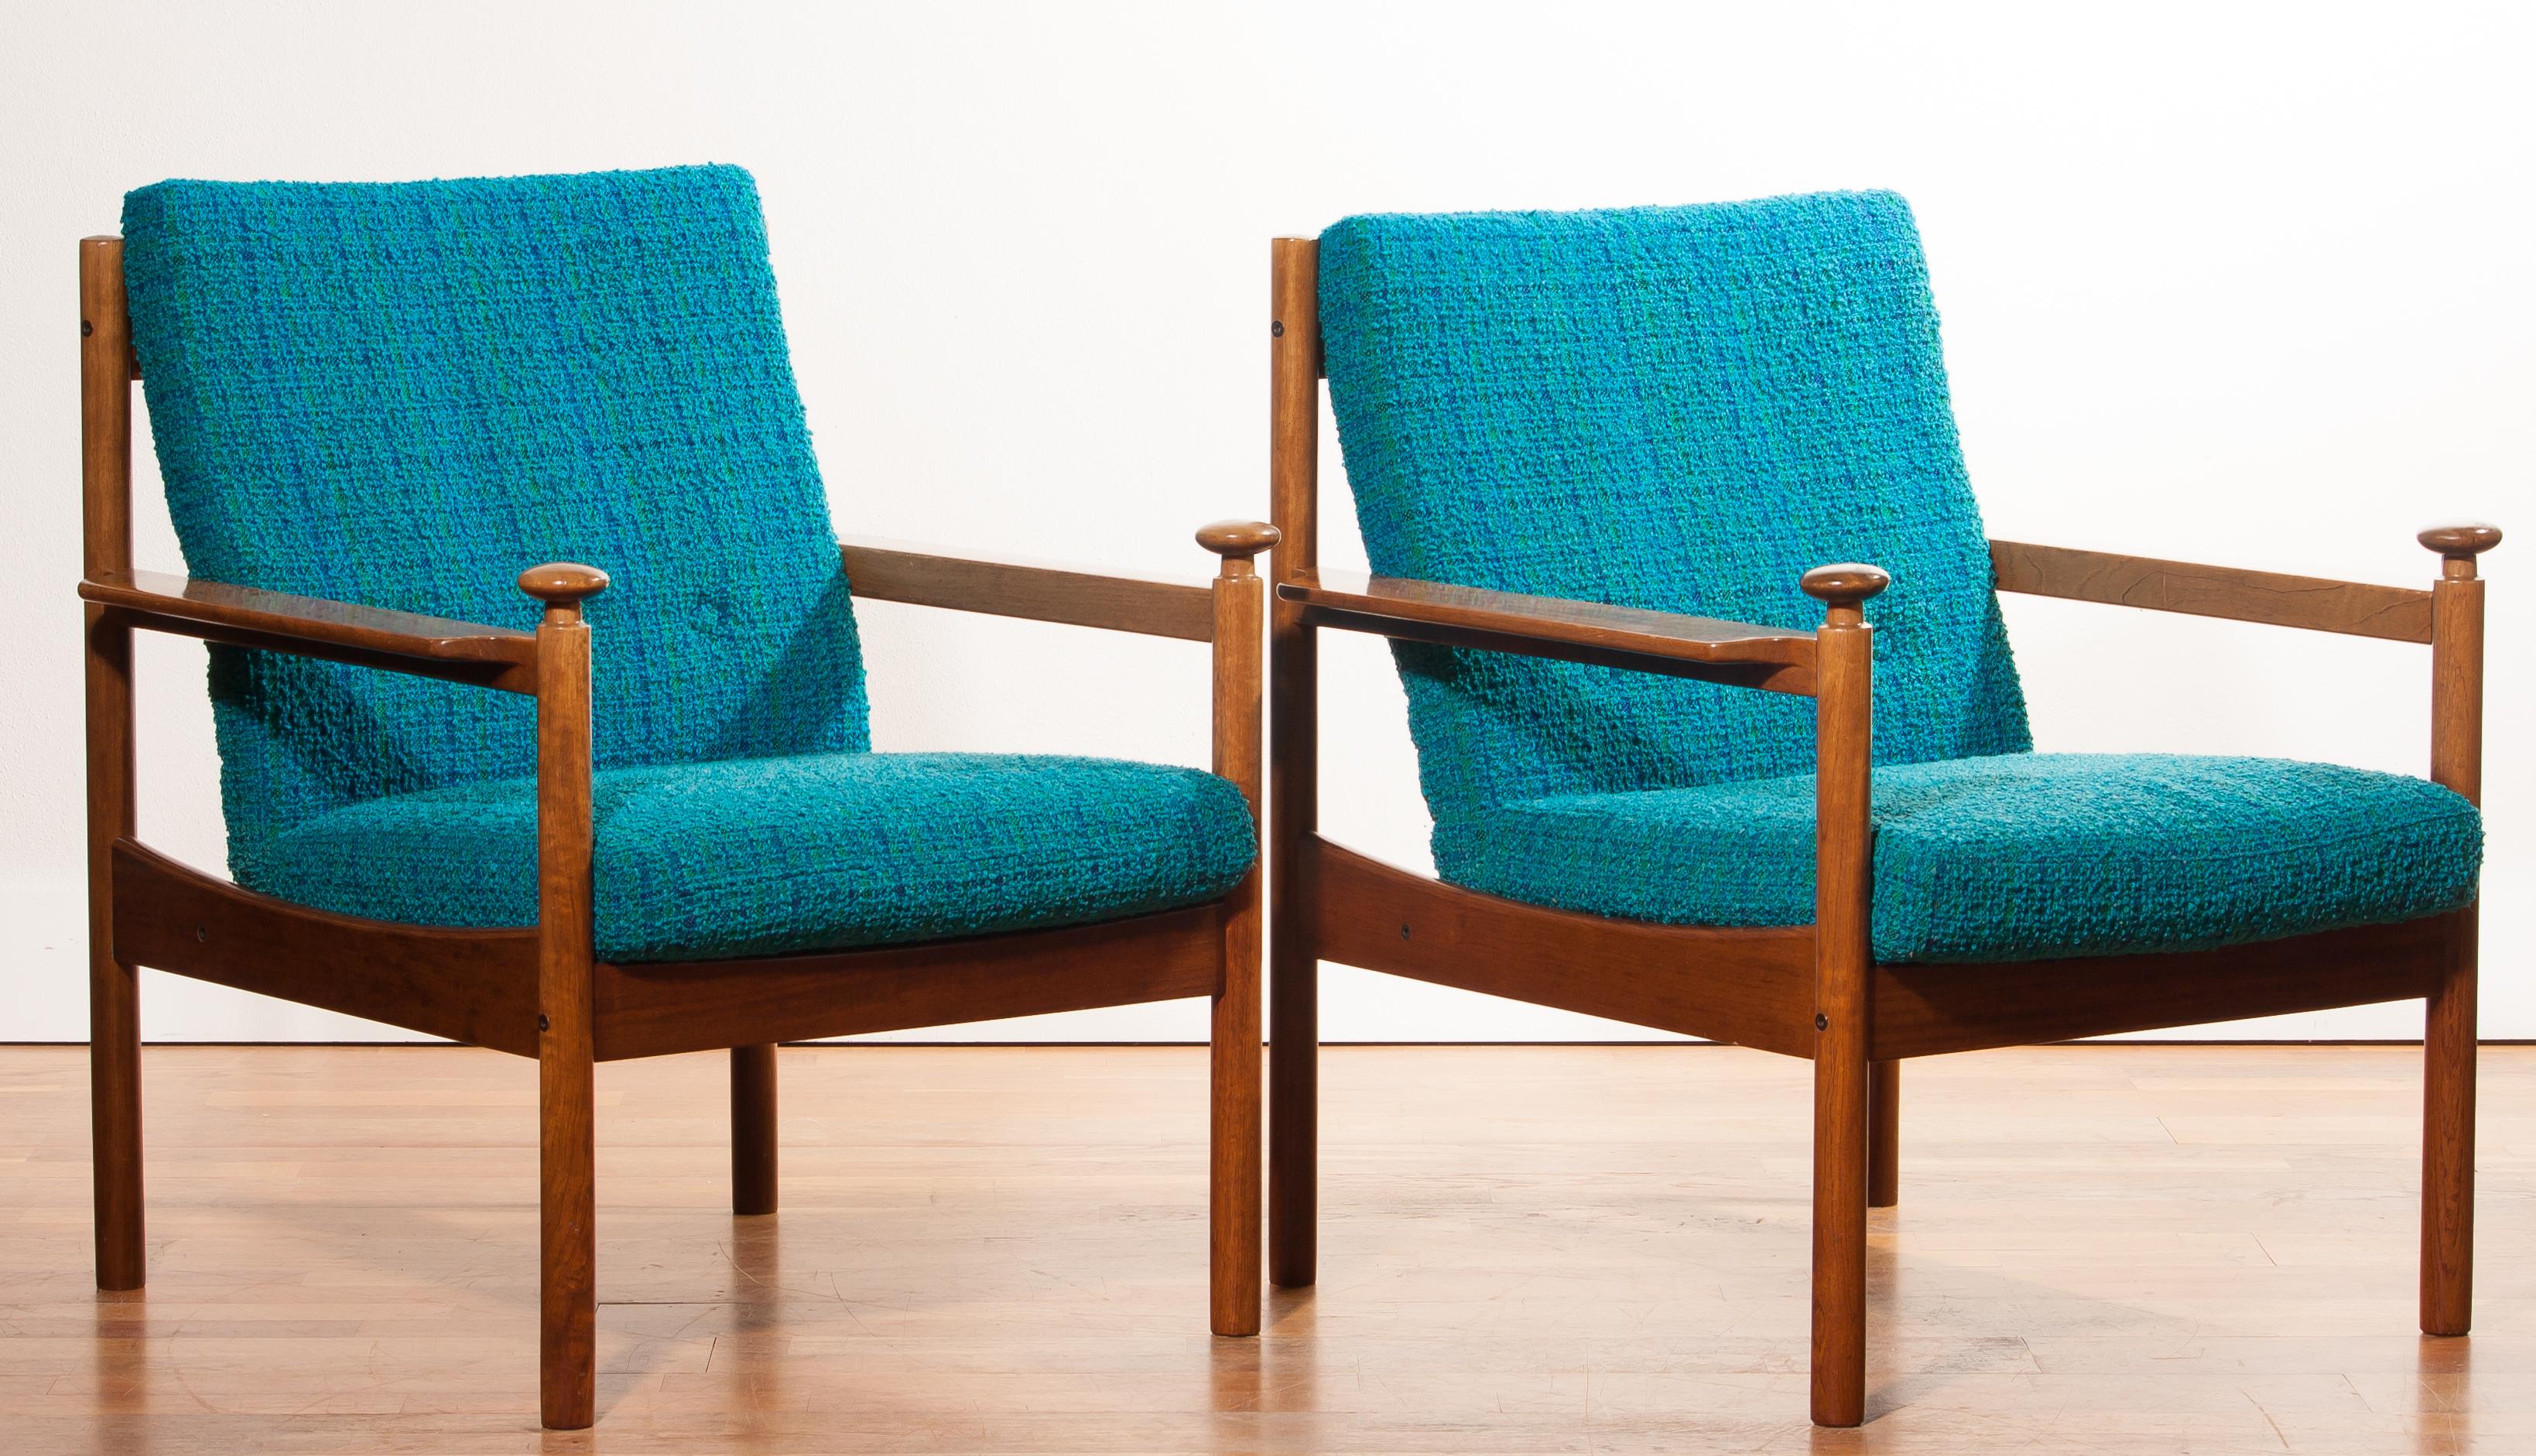 1950s, a Pair of Chairs by Torbjørn Afdal for Sandvik & Co Mobler 2